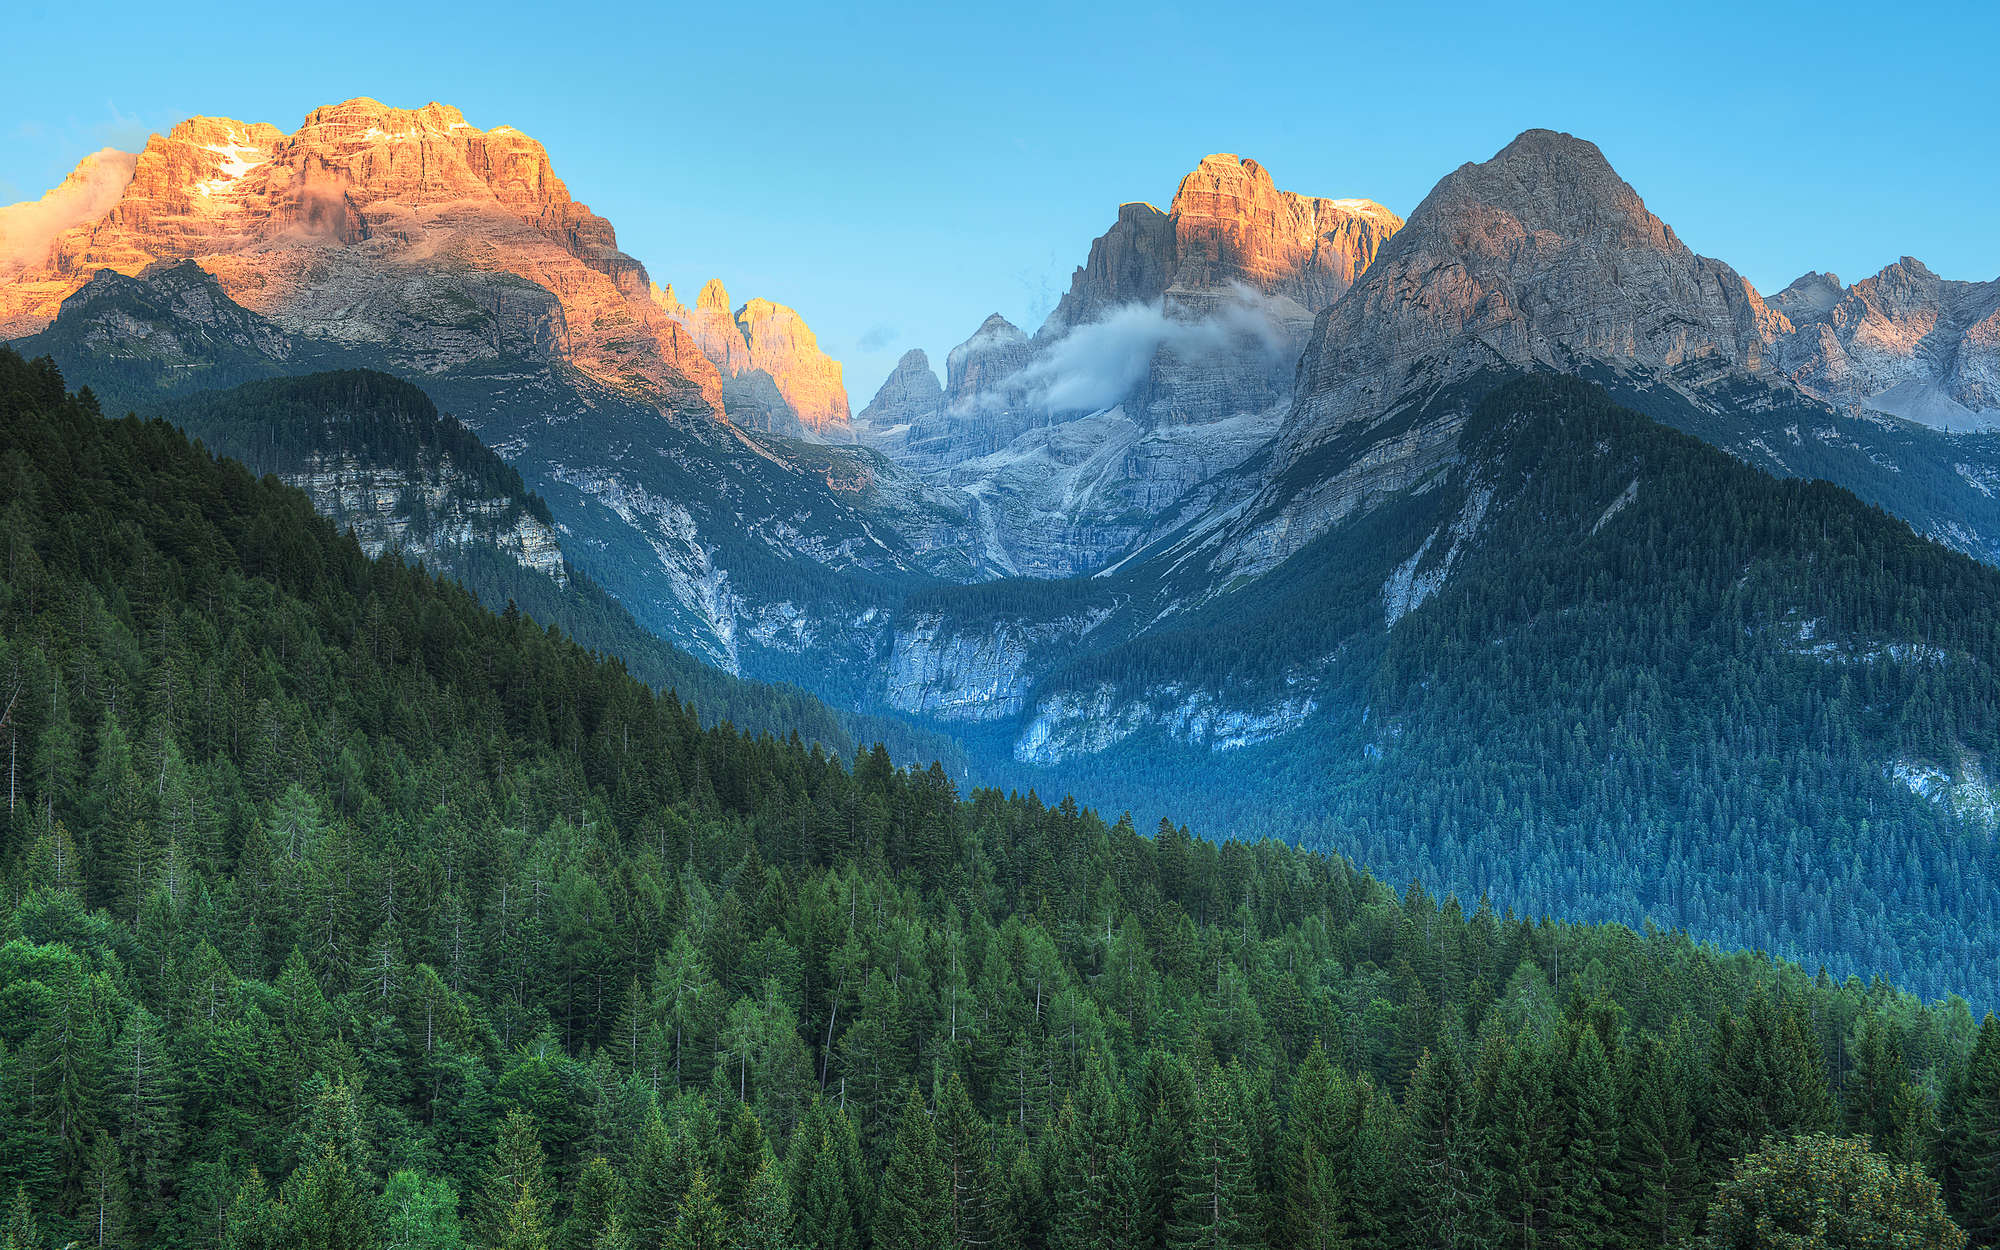             Fotomural Montañas Dolomitas en Italia - tejido no tejido nacarado liso
        